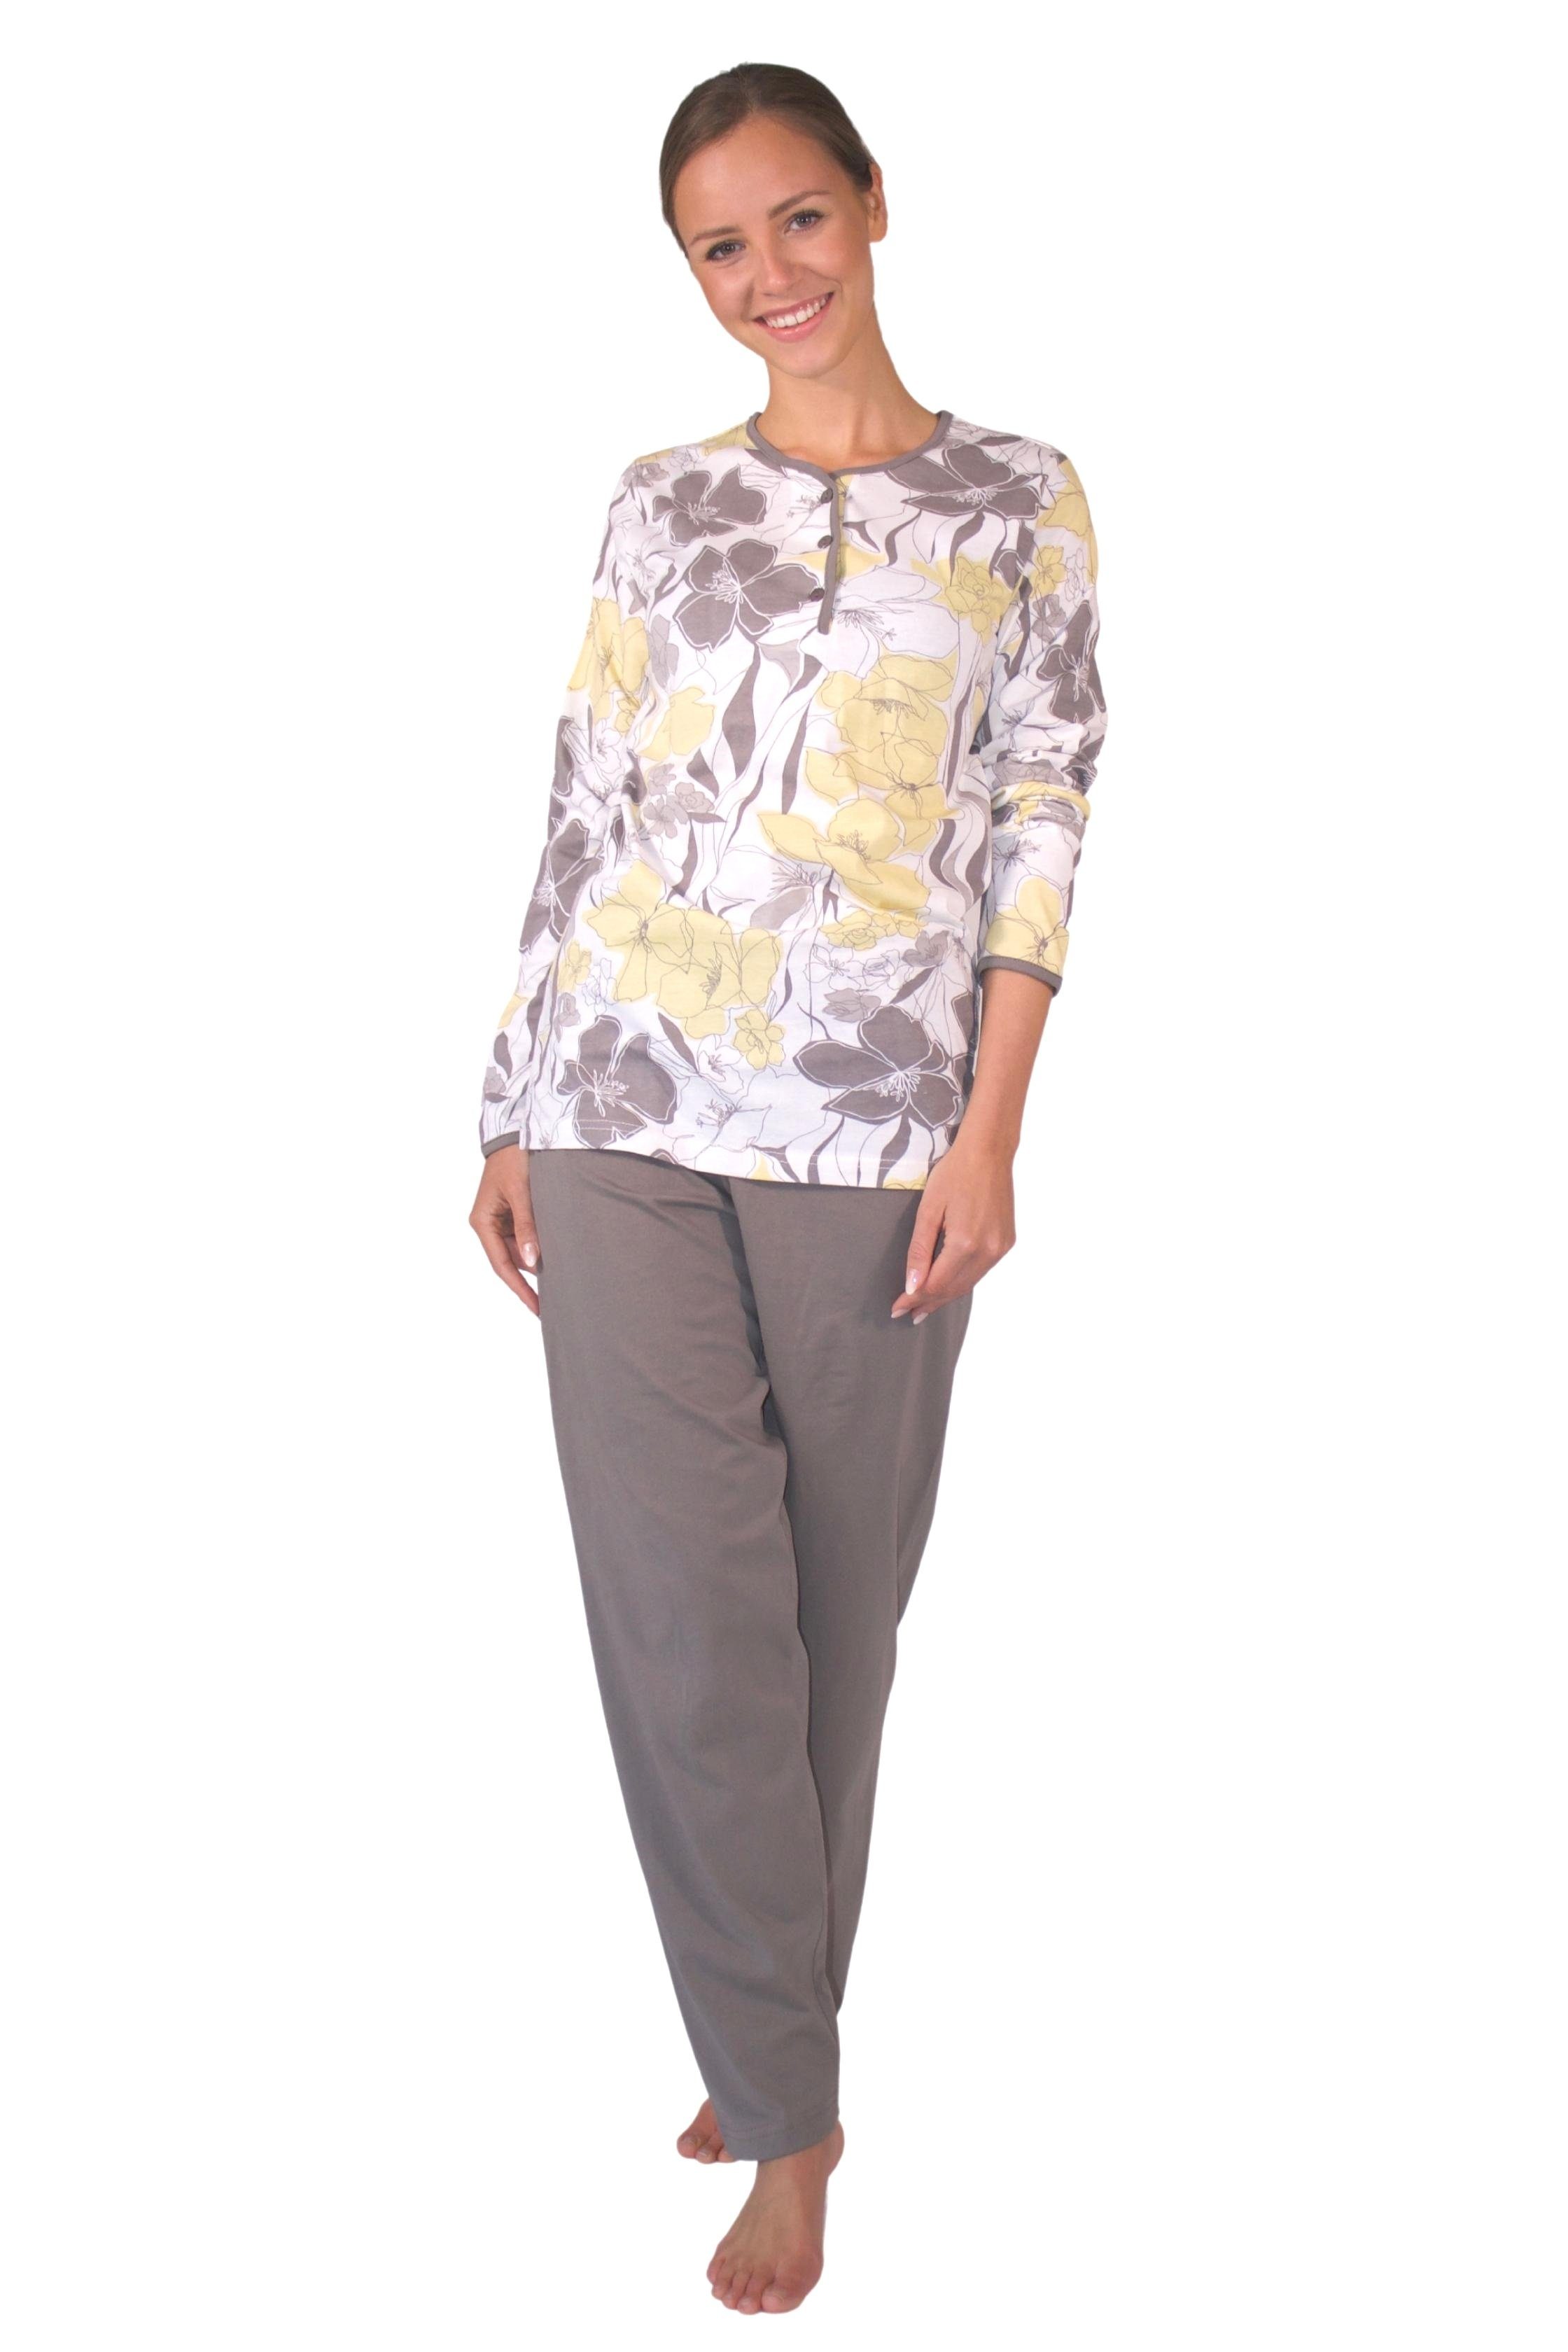 aus reiner DF652 Pyjama, Pyjama Consult-Tex Qualität Baumwolle-Jersey Schlafanzug Damen